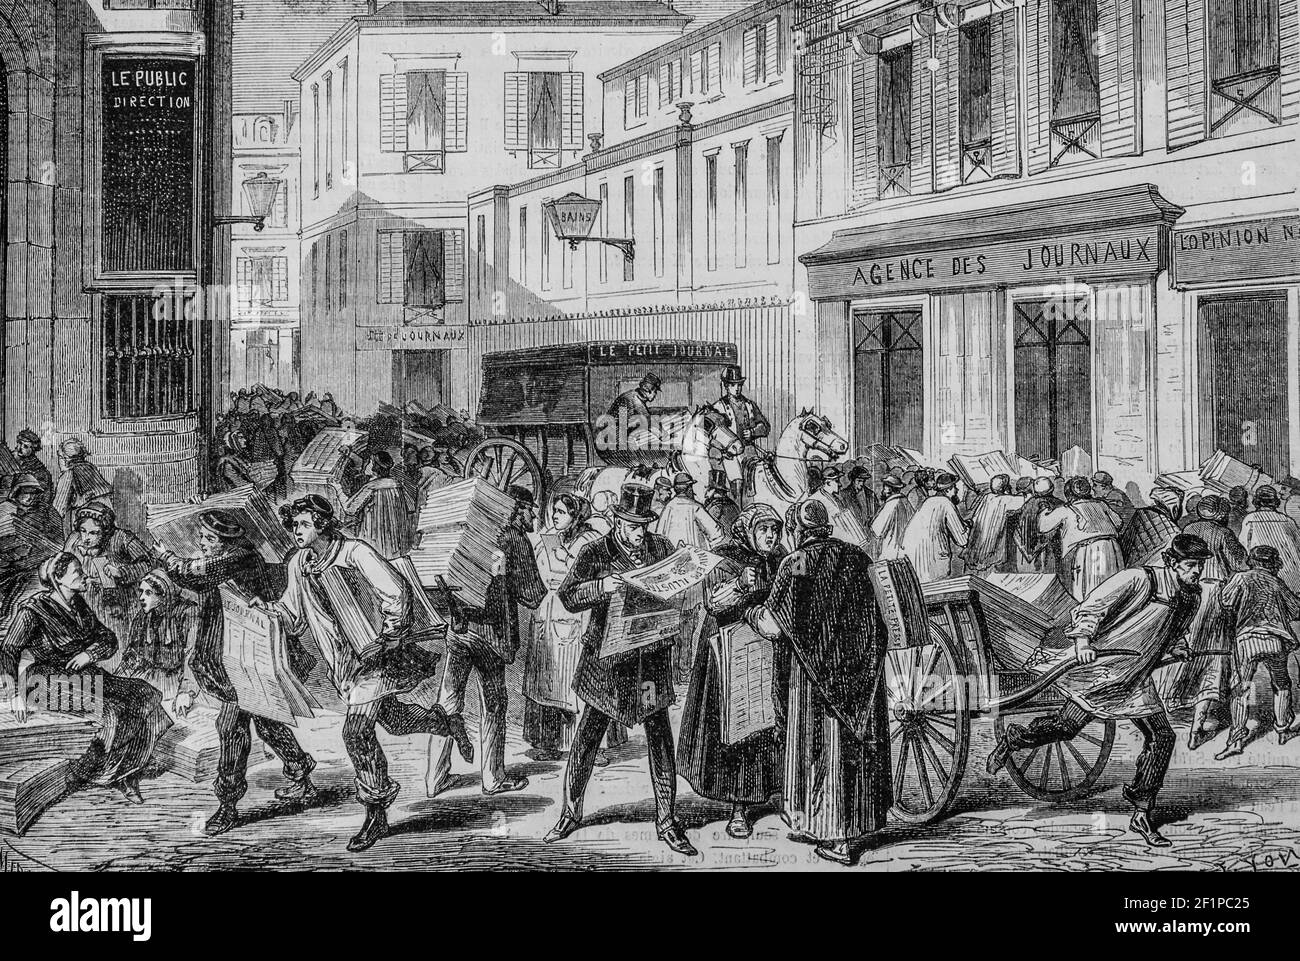 paris la halle aux journaux rue du croissant, l'univers illuste,editeur michele Levy 1869 Stockfoto